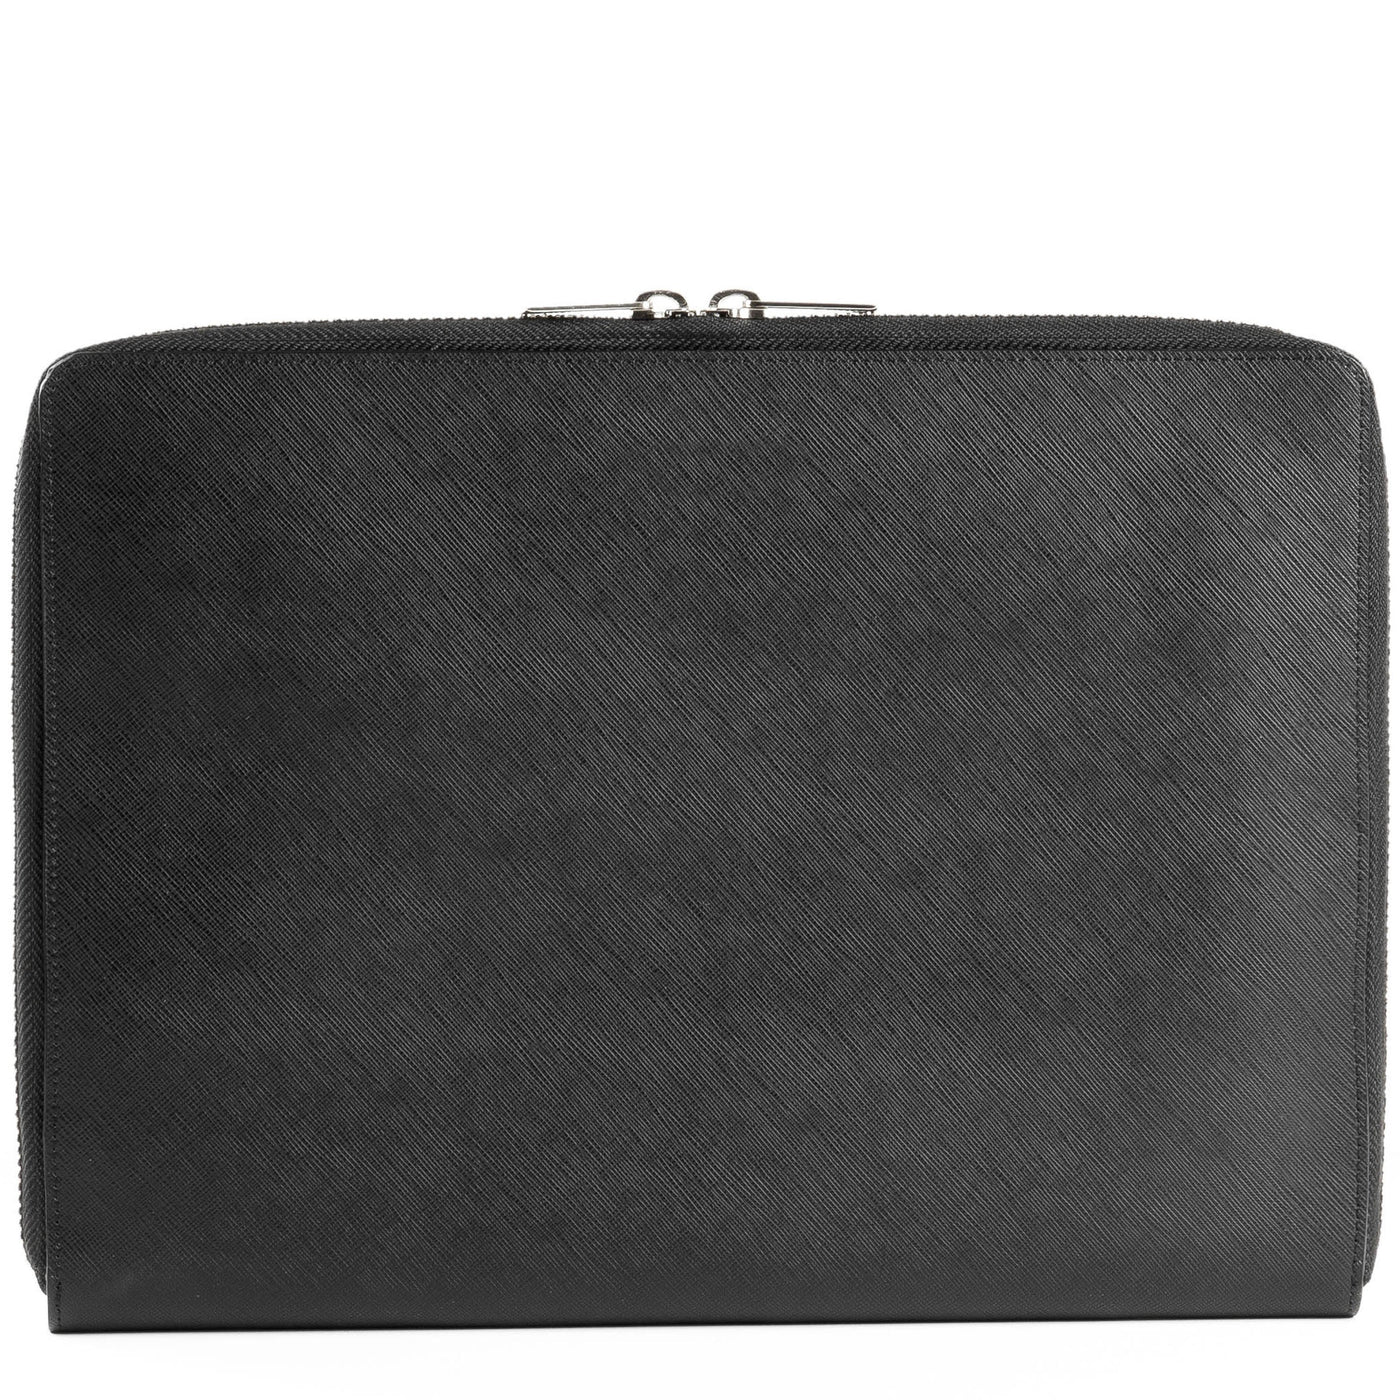 portfolio document holder bag - mathias #couleur_noir